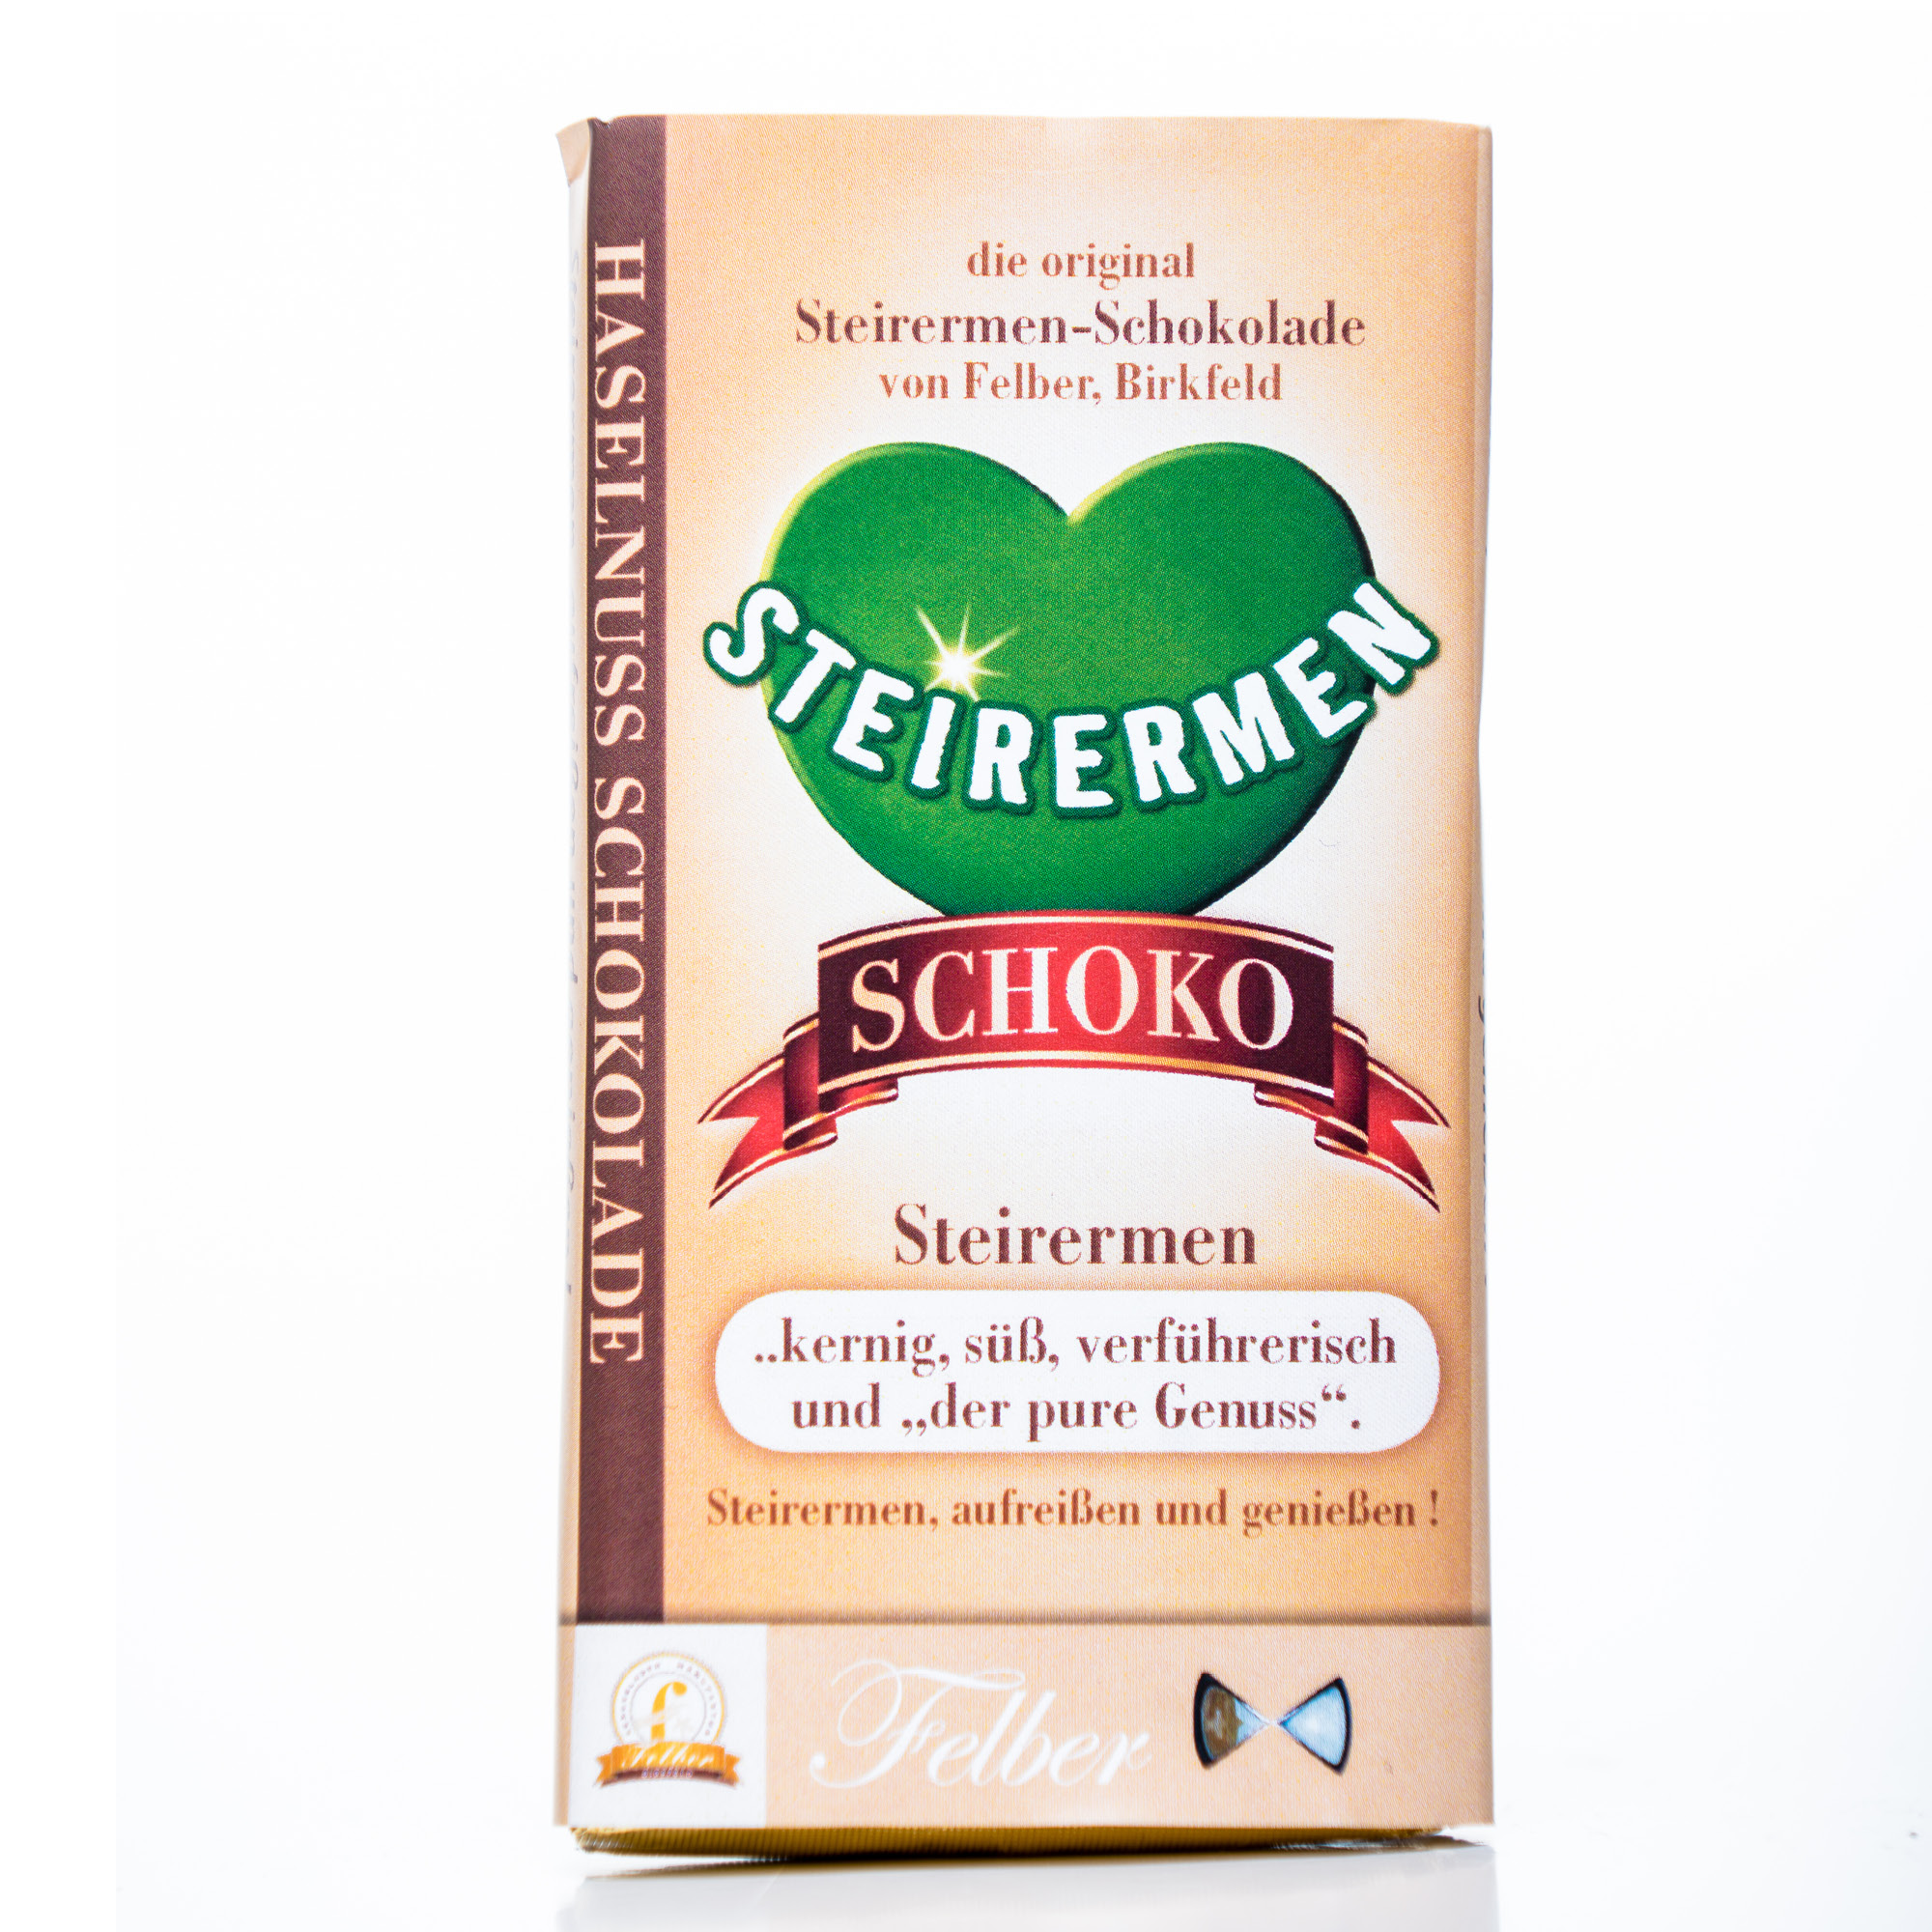 Original Steirermen-Schokolade